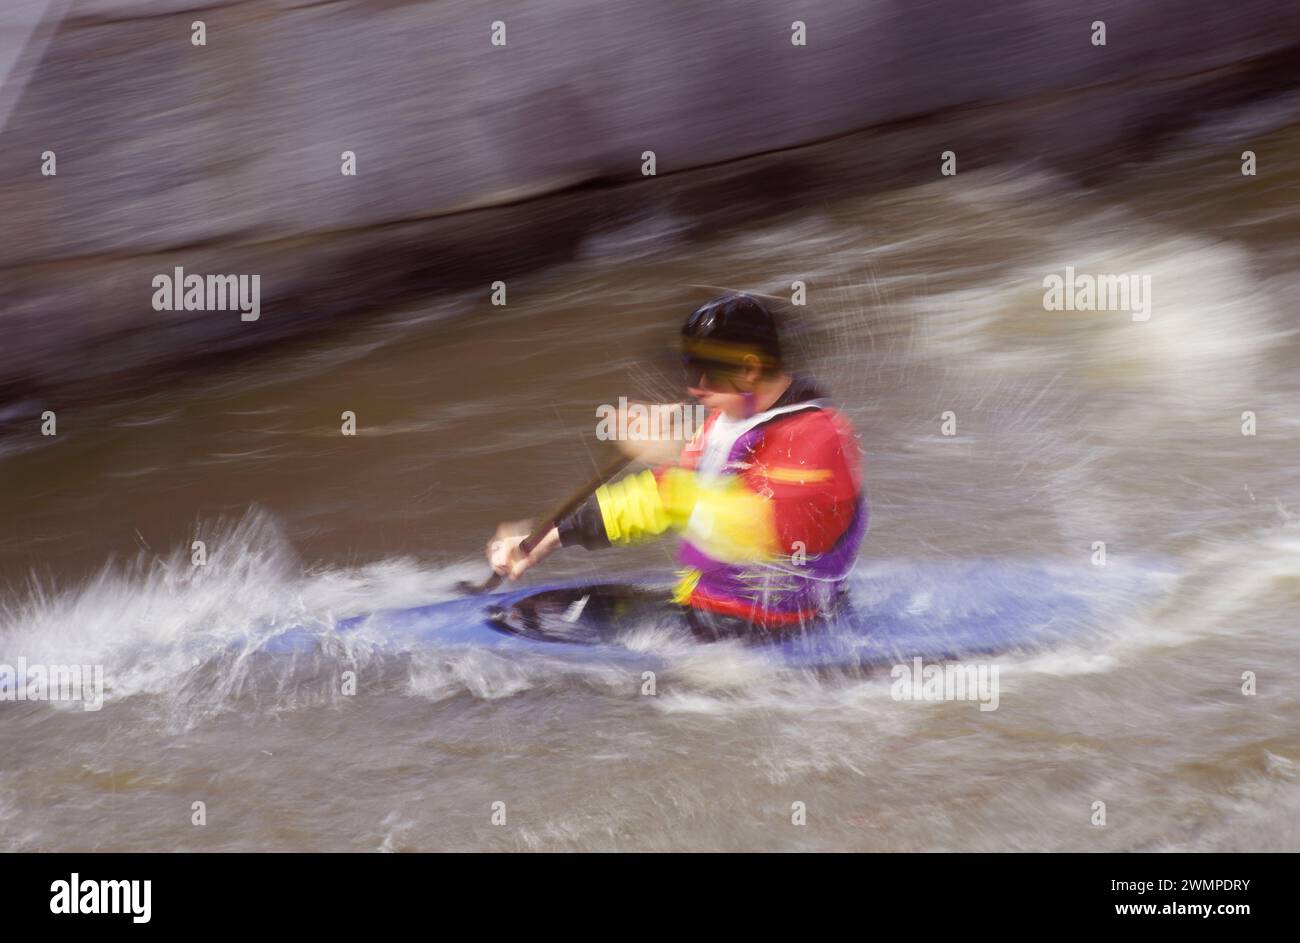 Whitewater kayaking Stock Photo